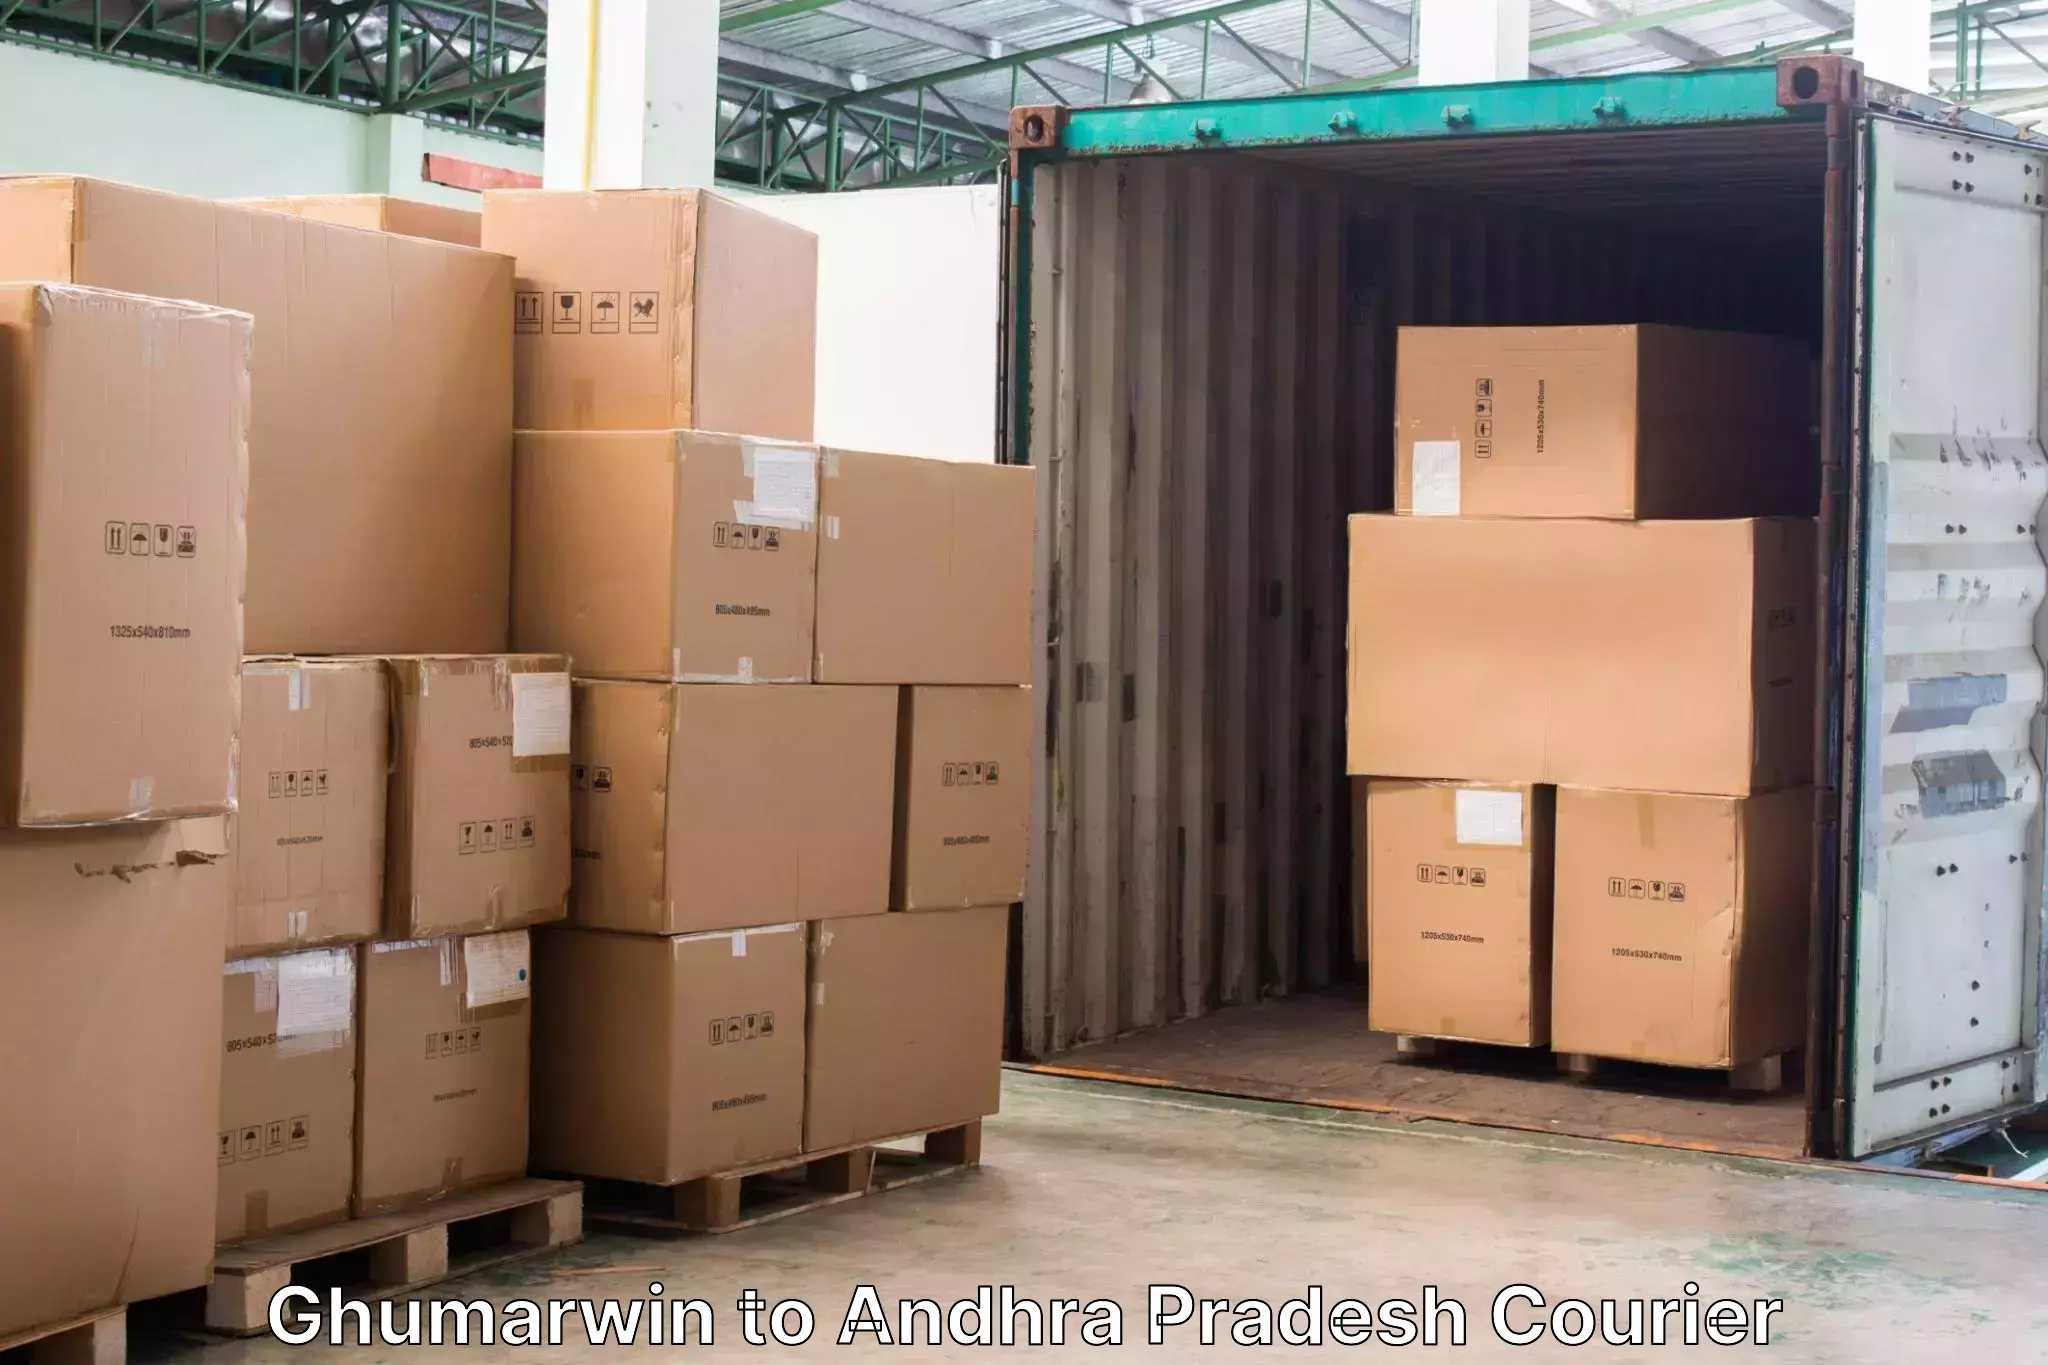 Door to door luggage delivery Ghumarwin to Visakhapatnam Port